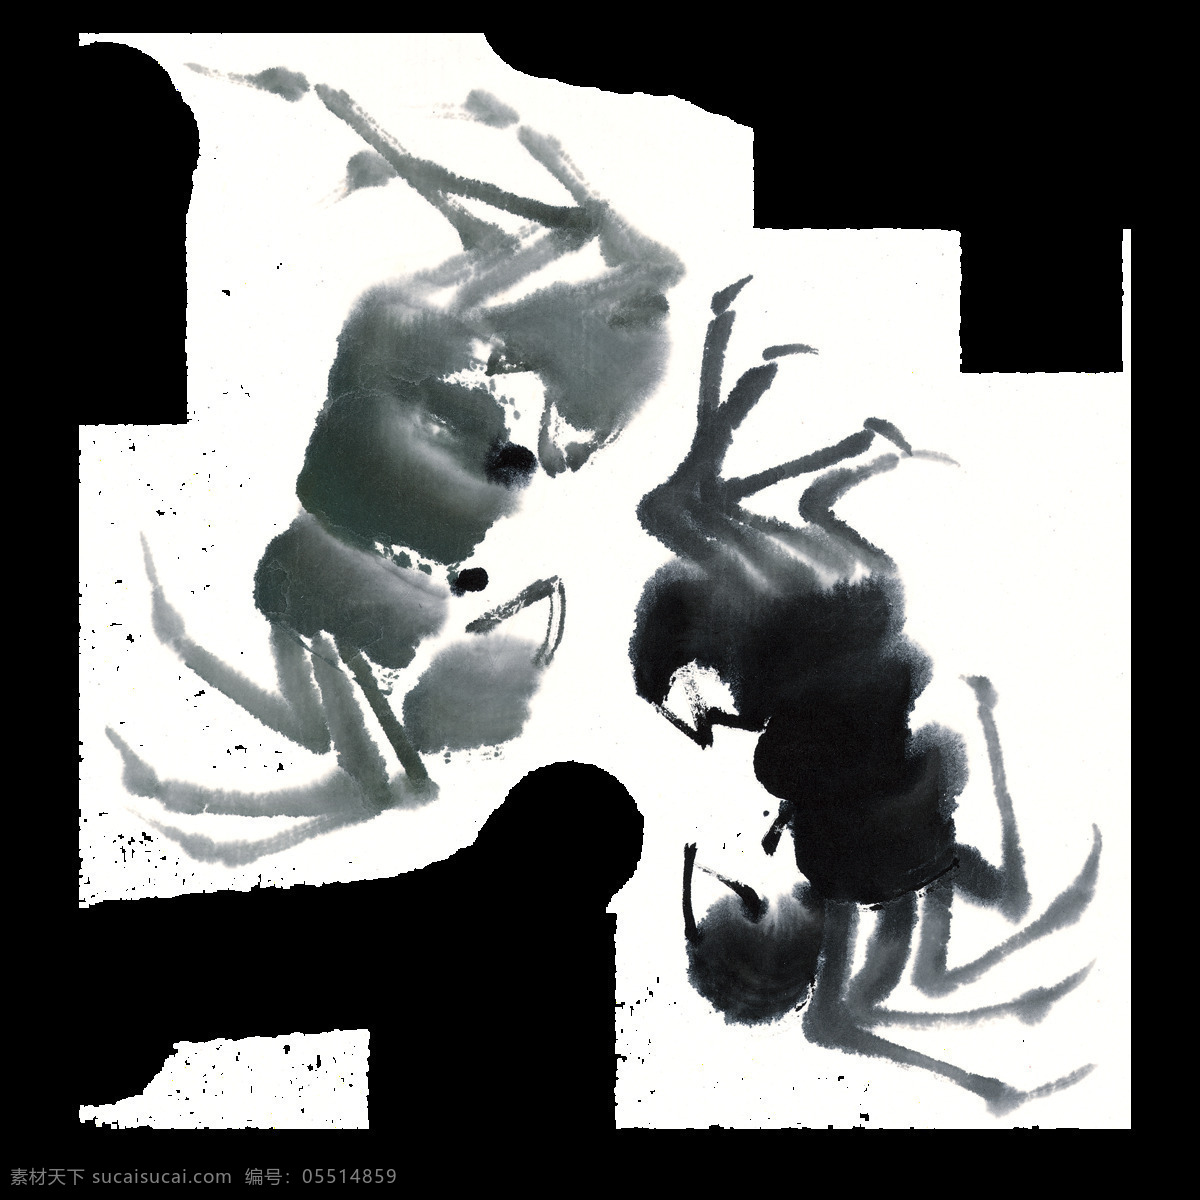 唯美 创意 螃蟹 水墨画 美观 生动 形象 两只黑色螃蟹 活泼